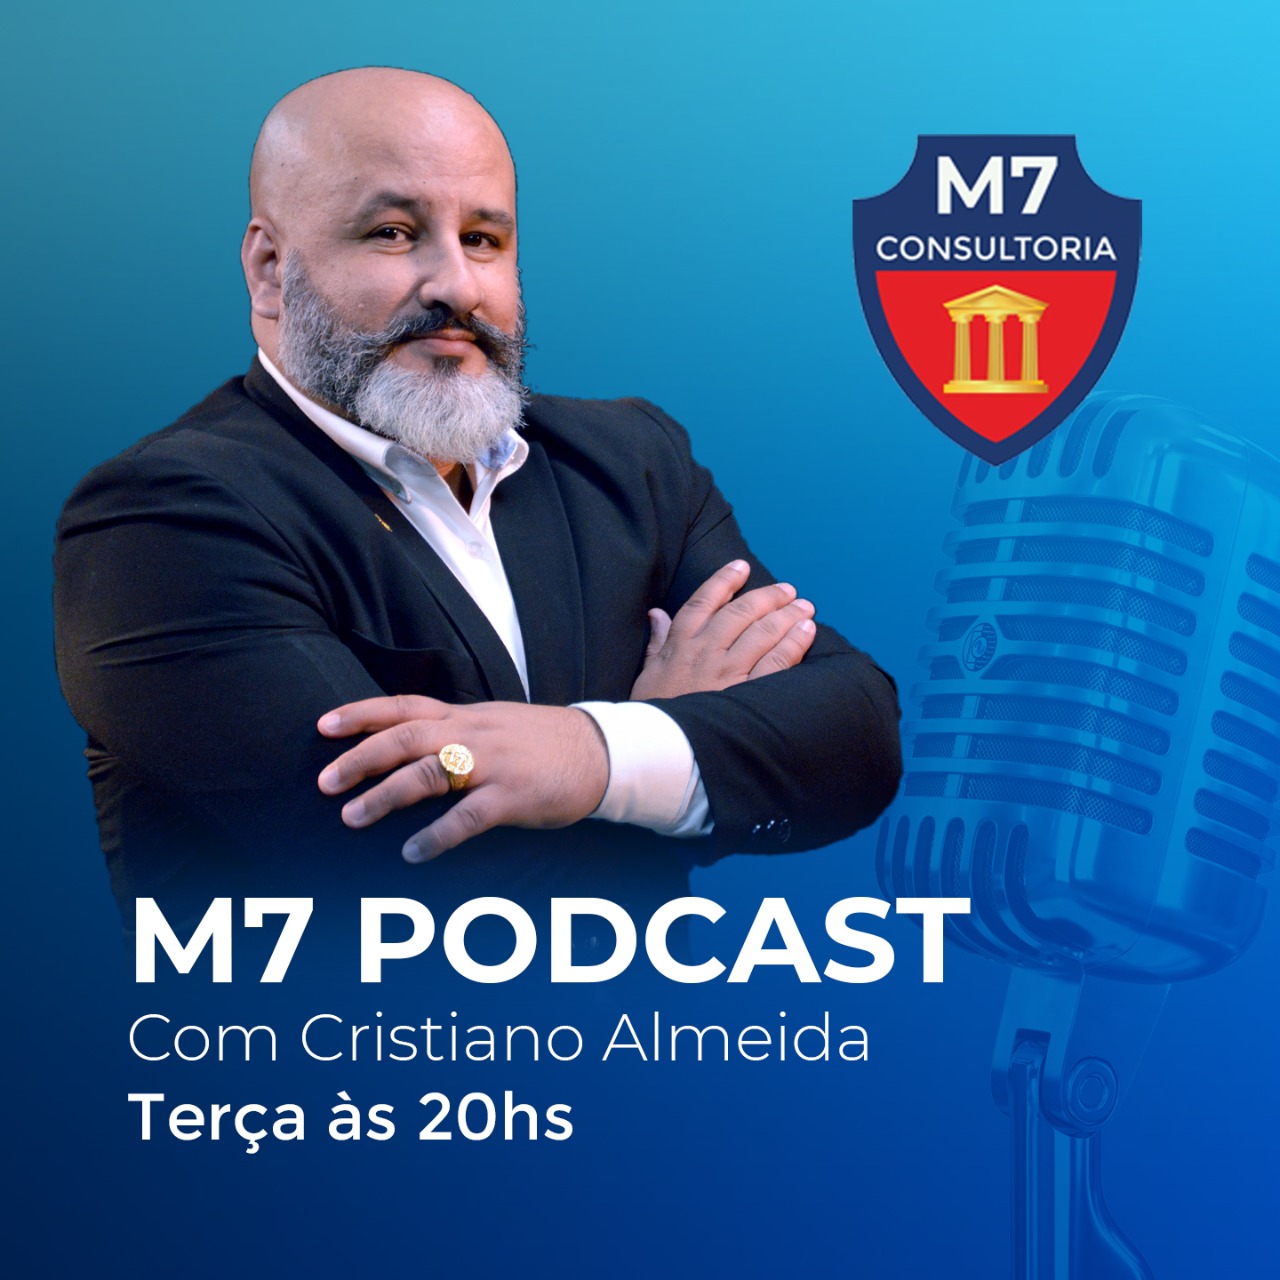 Podcast da M7 Consultoria!